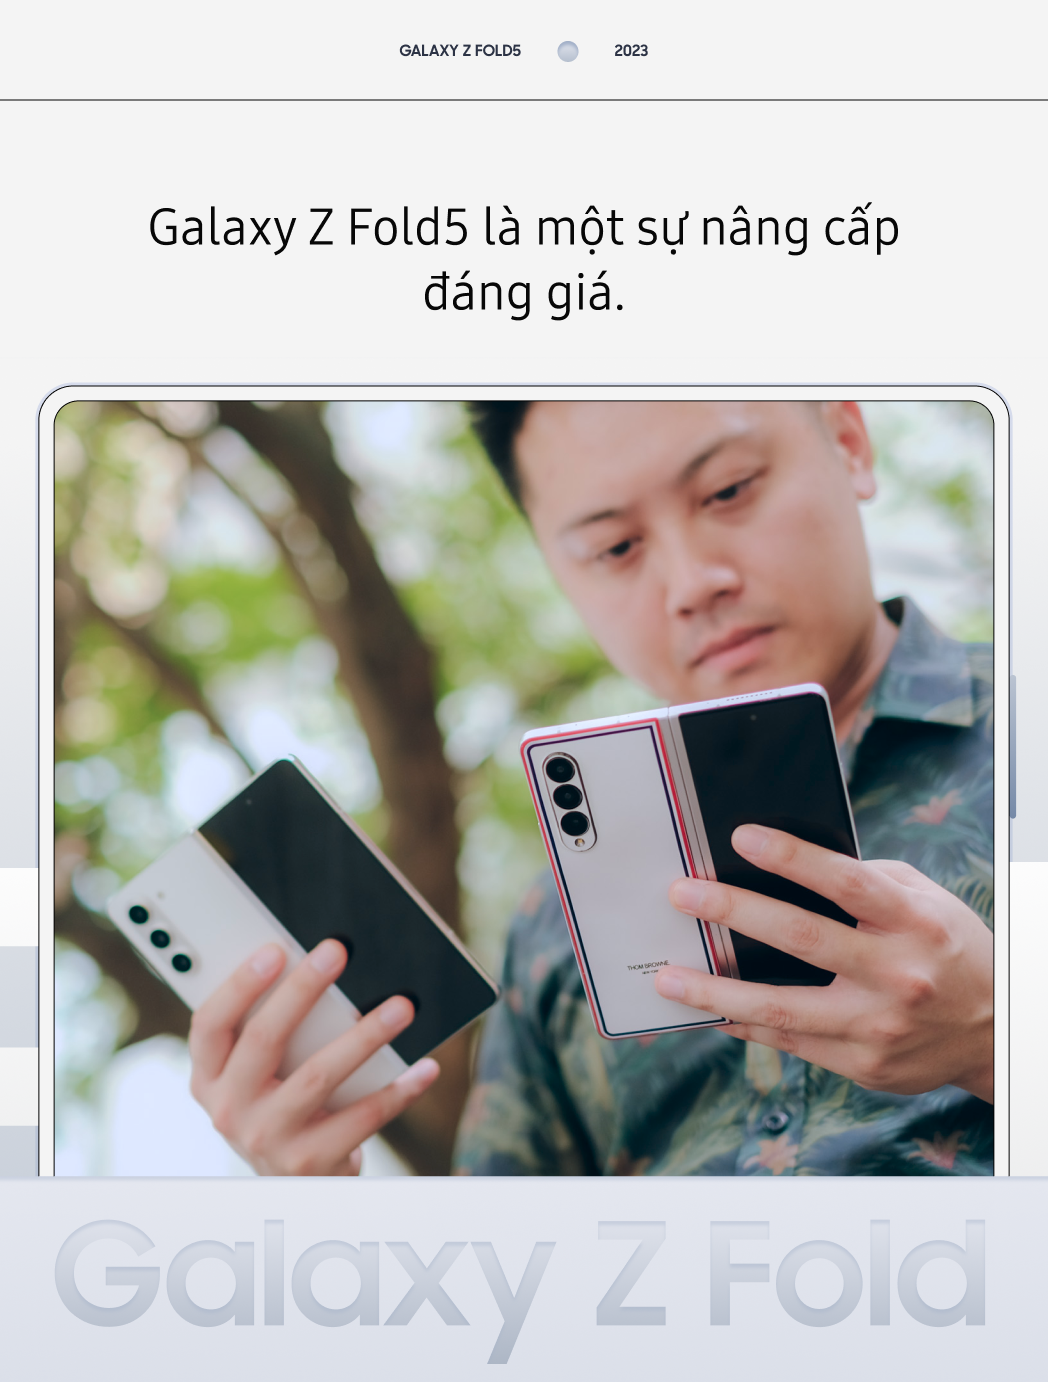 Người dùng smartphone gập: “Galaxy Z Fold5 là sự nâng cấp xứng đáng!” - Ảnh 9.